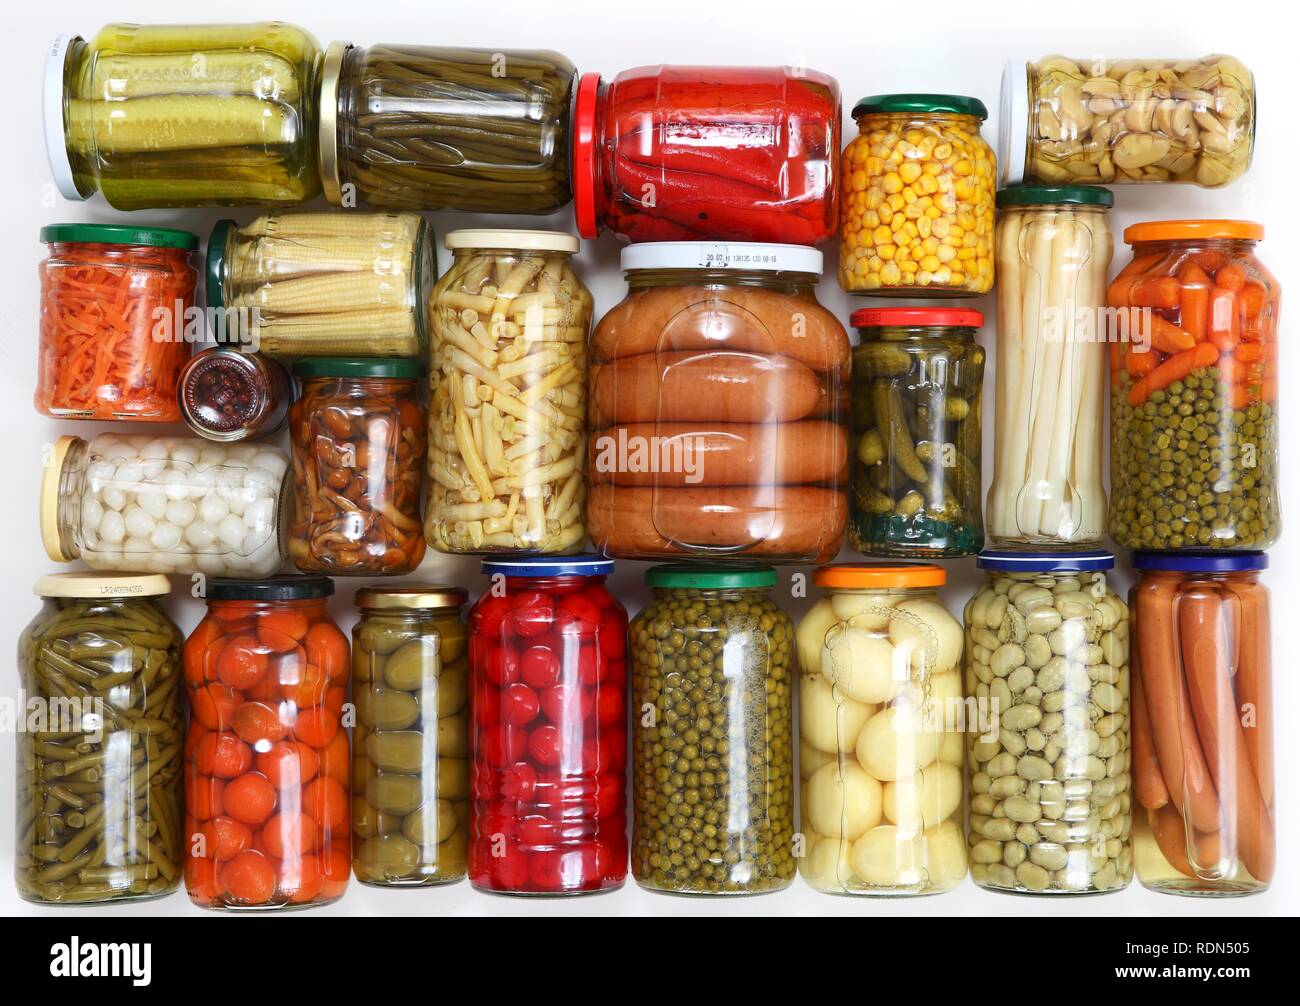 Lebensmittel konserviert in Verpackungen aus Glas Stockfotografie - Alamy